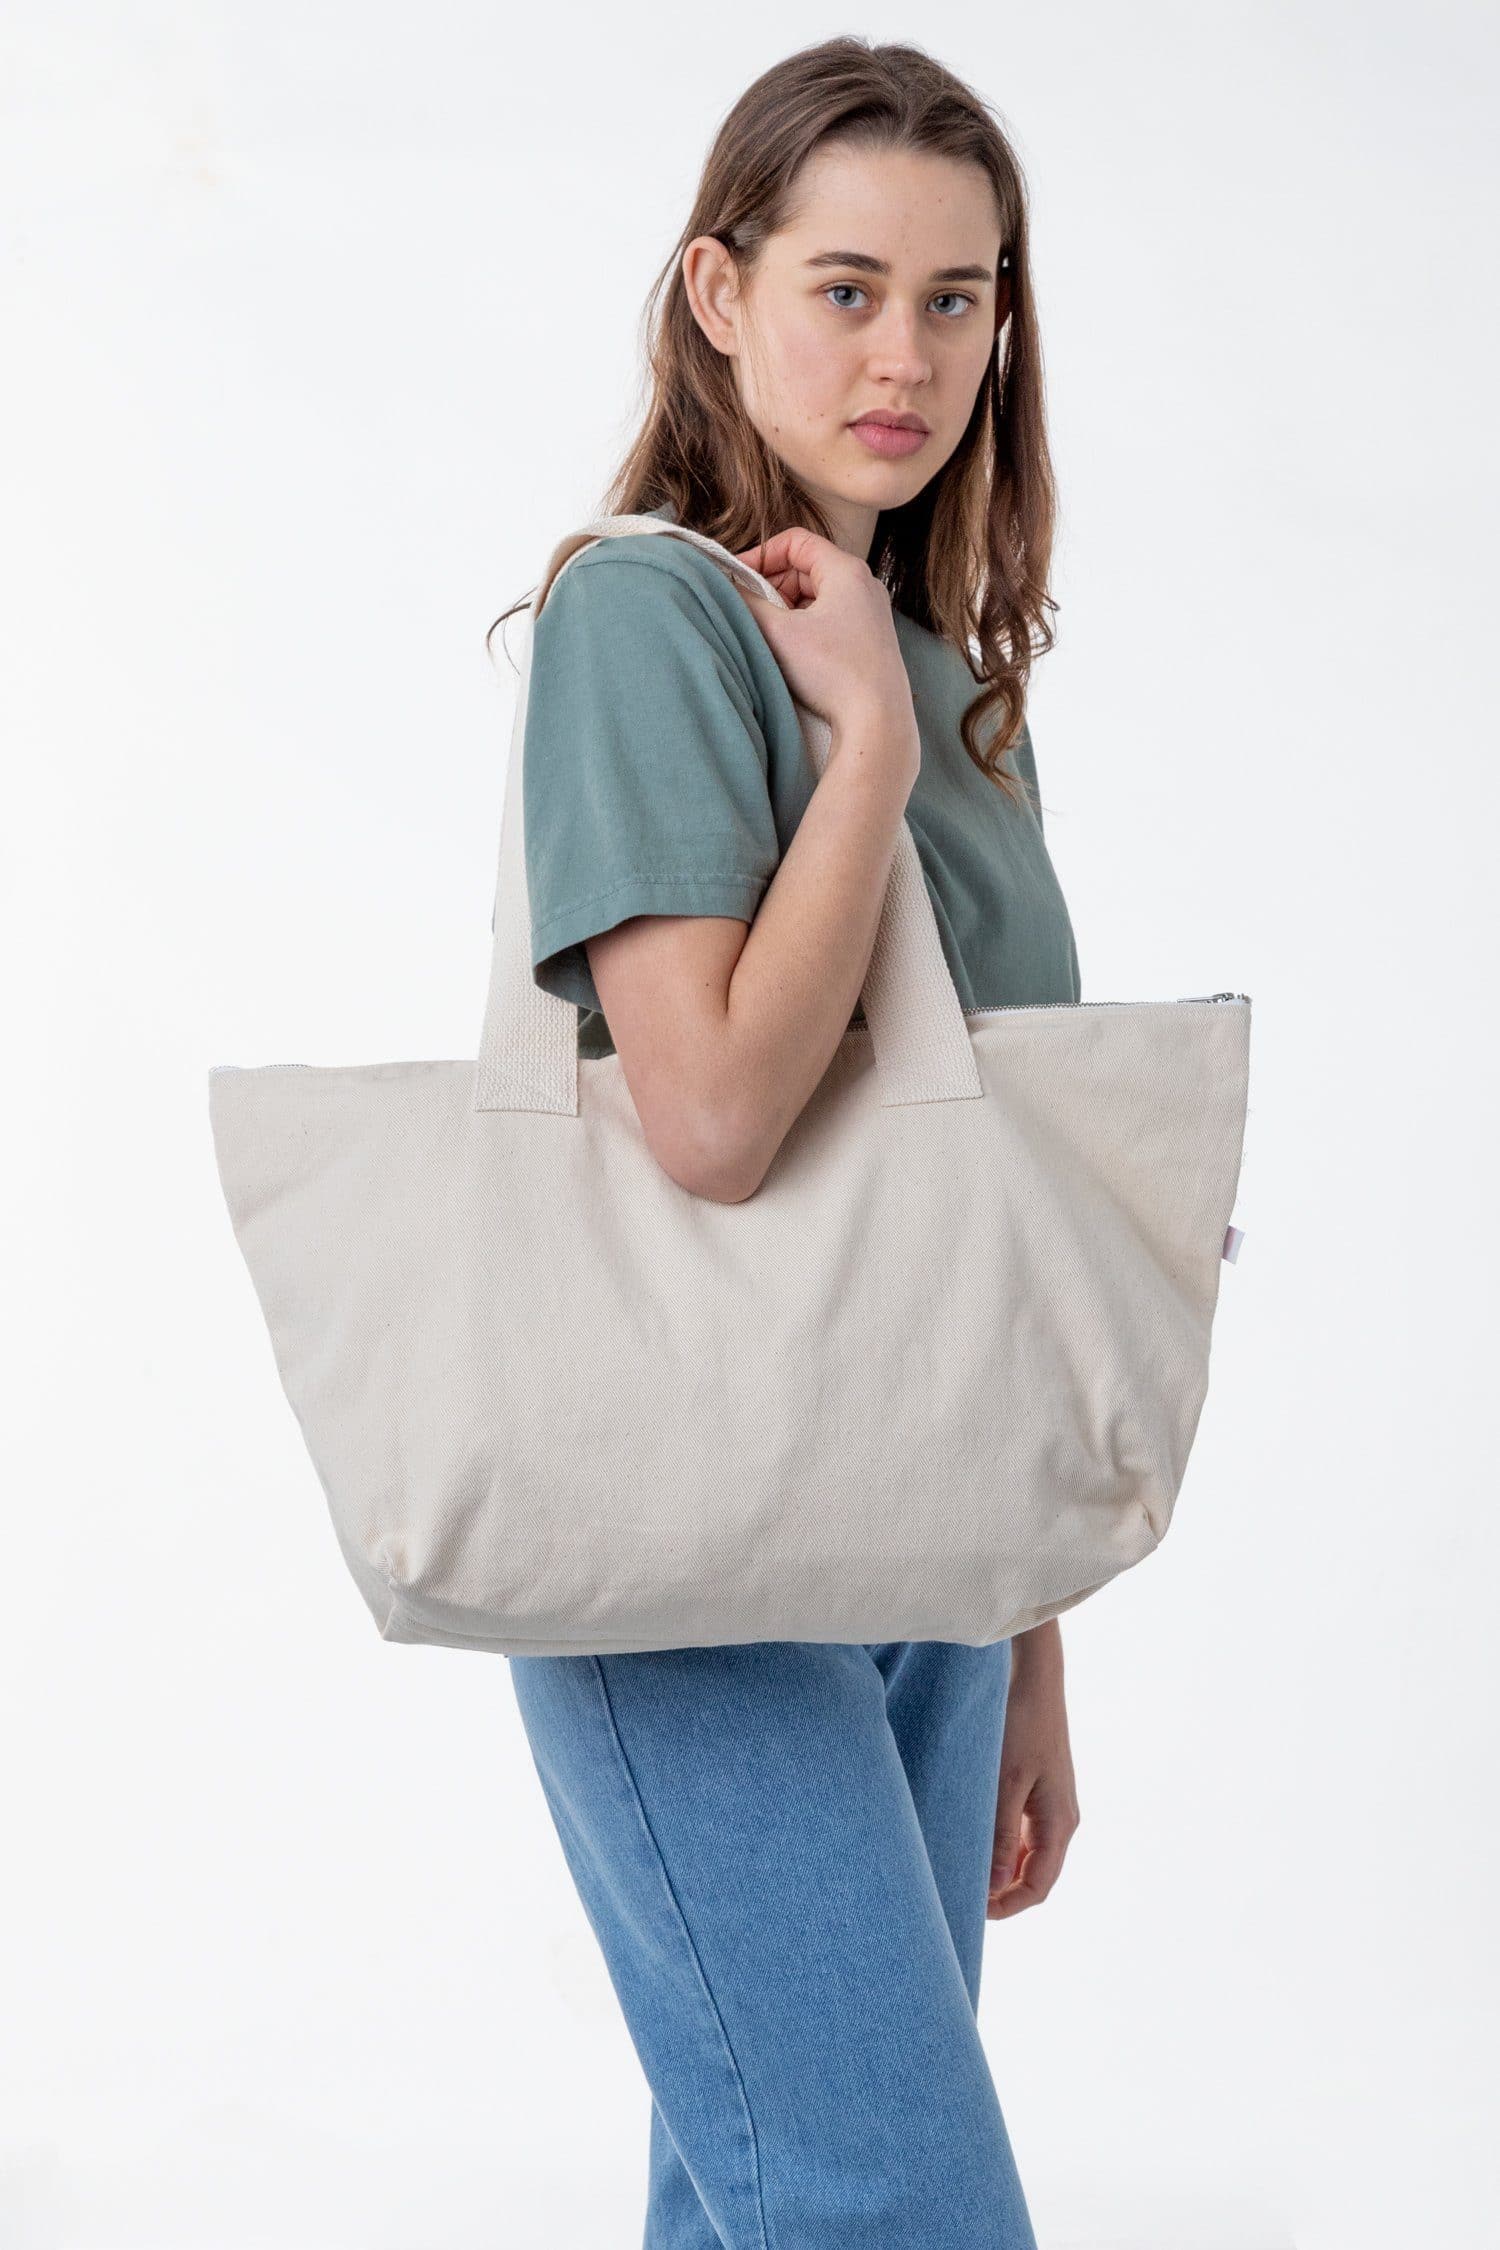 XL Zip Tote Bag - Grateful – Natural Life